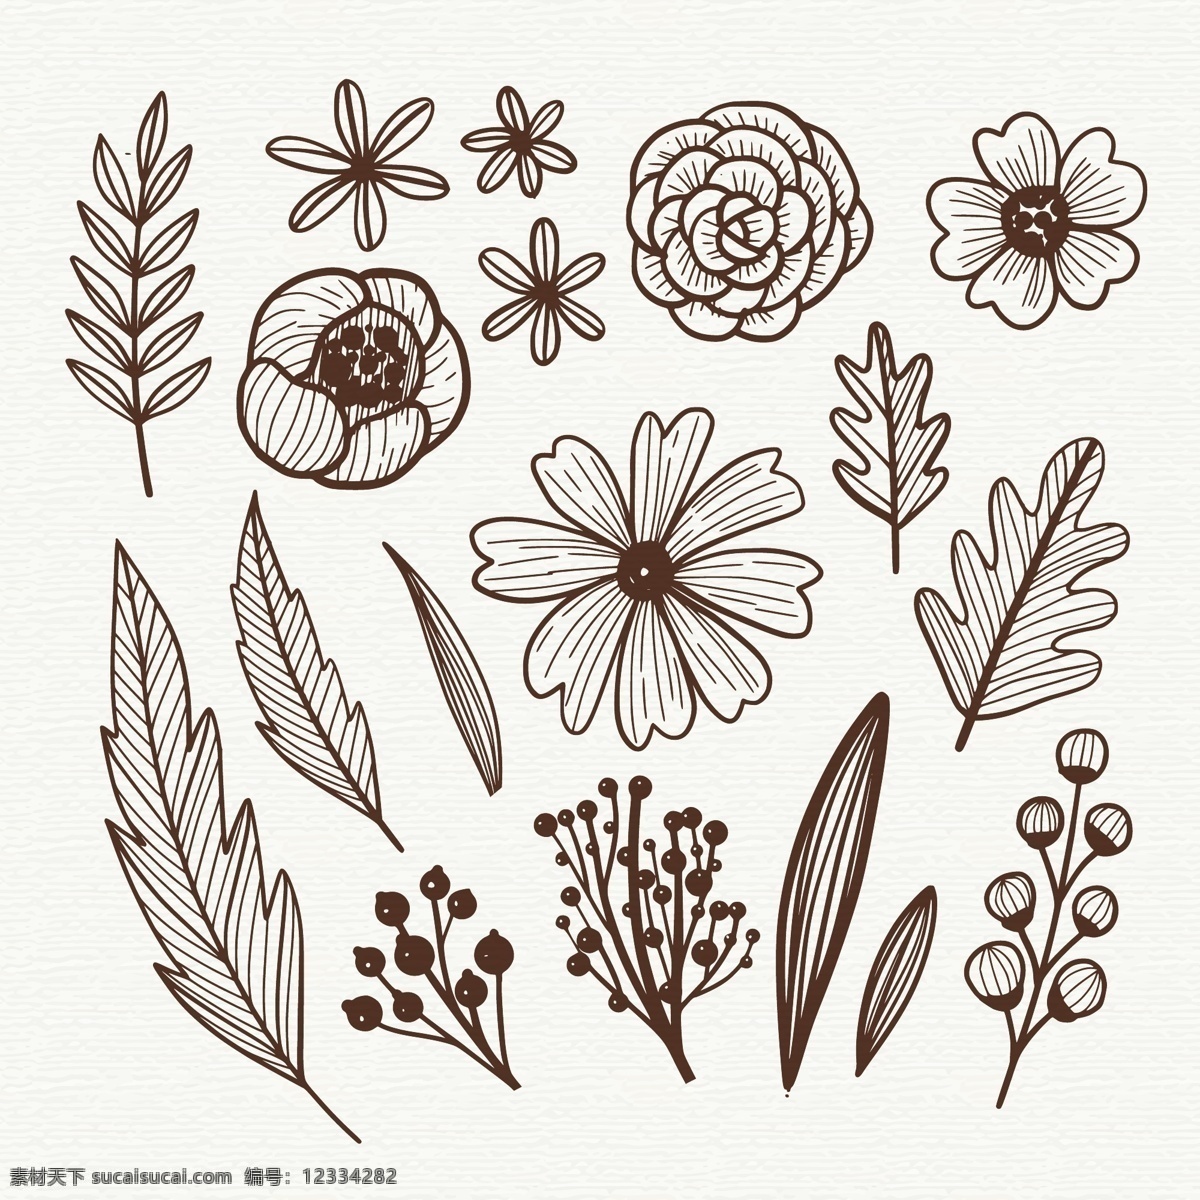 手绘 素描 风格 花卉 元素 自然 叶 线描 线条 装饰性